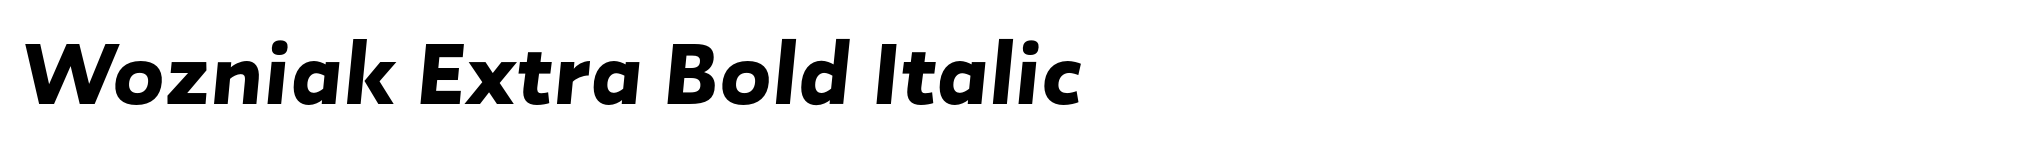 Wozniak Extra Bold Italic image